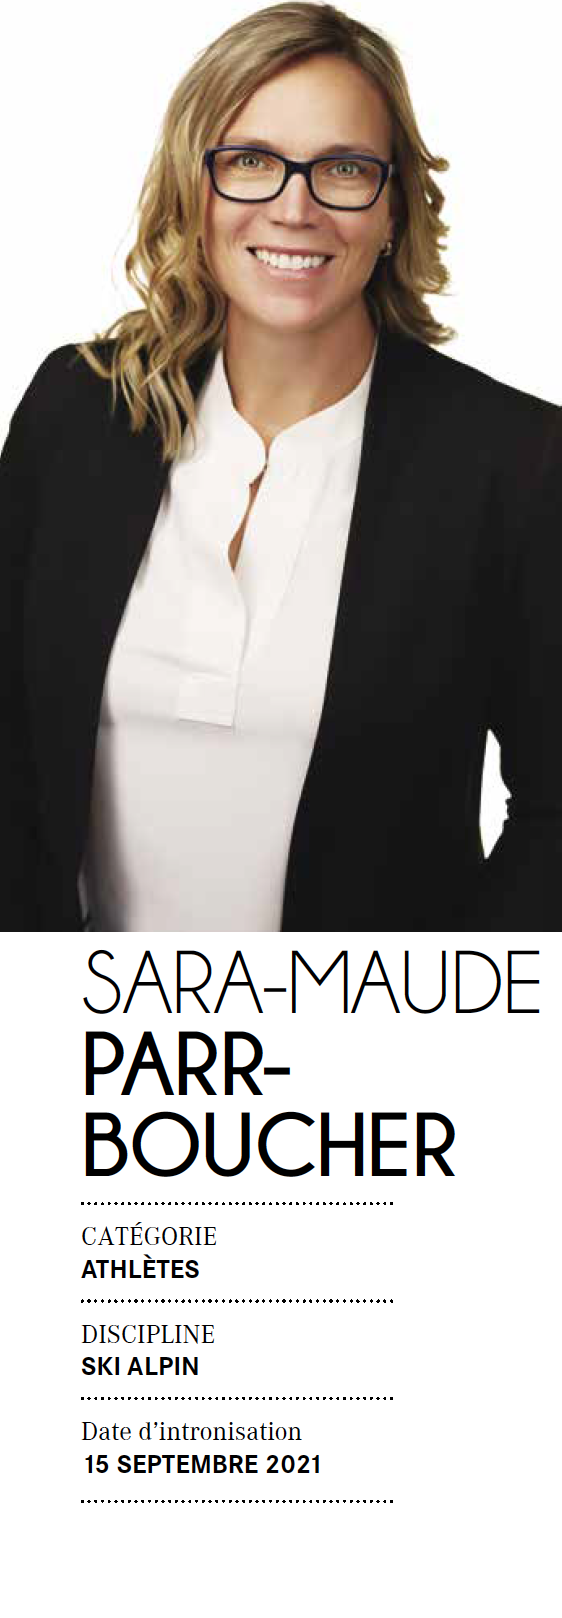 Sara-Maude Parr-Boucher